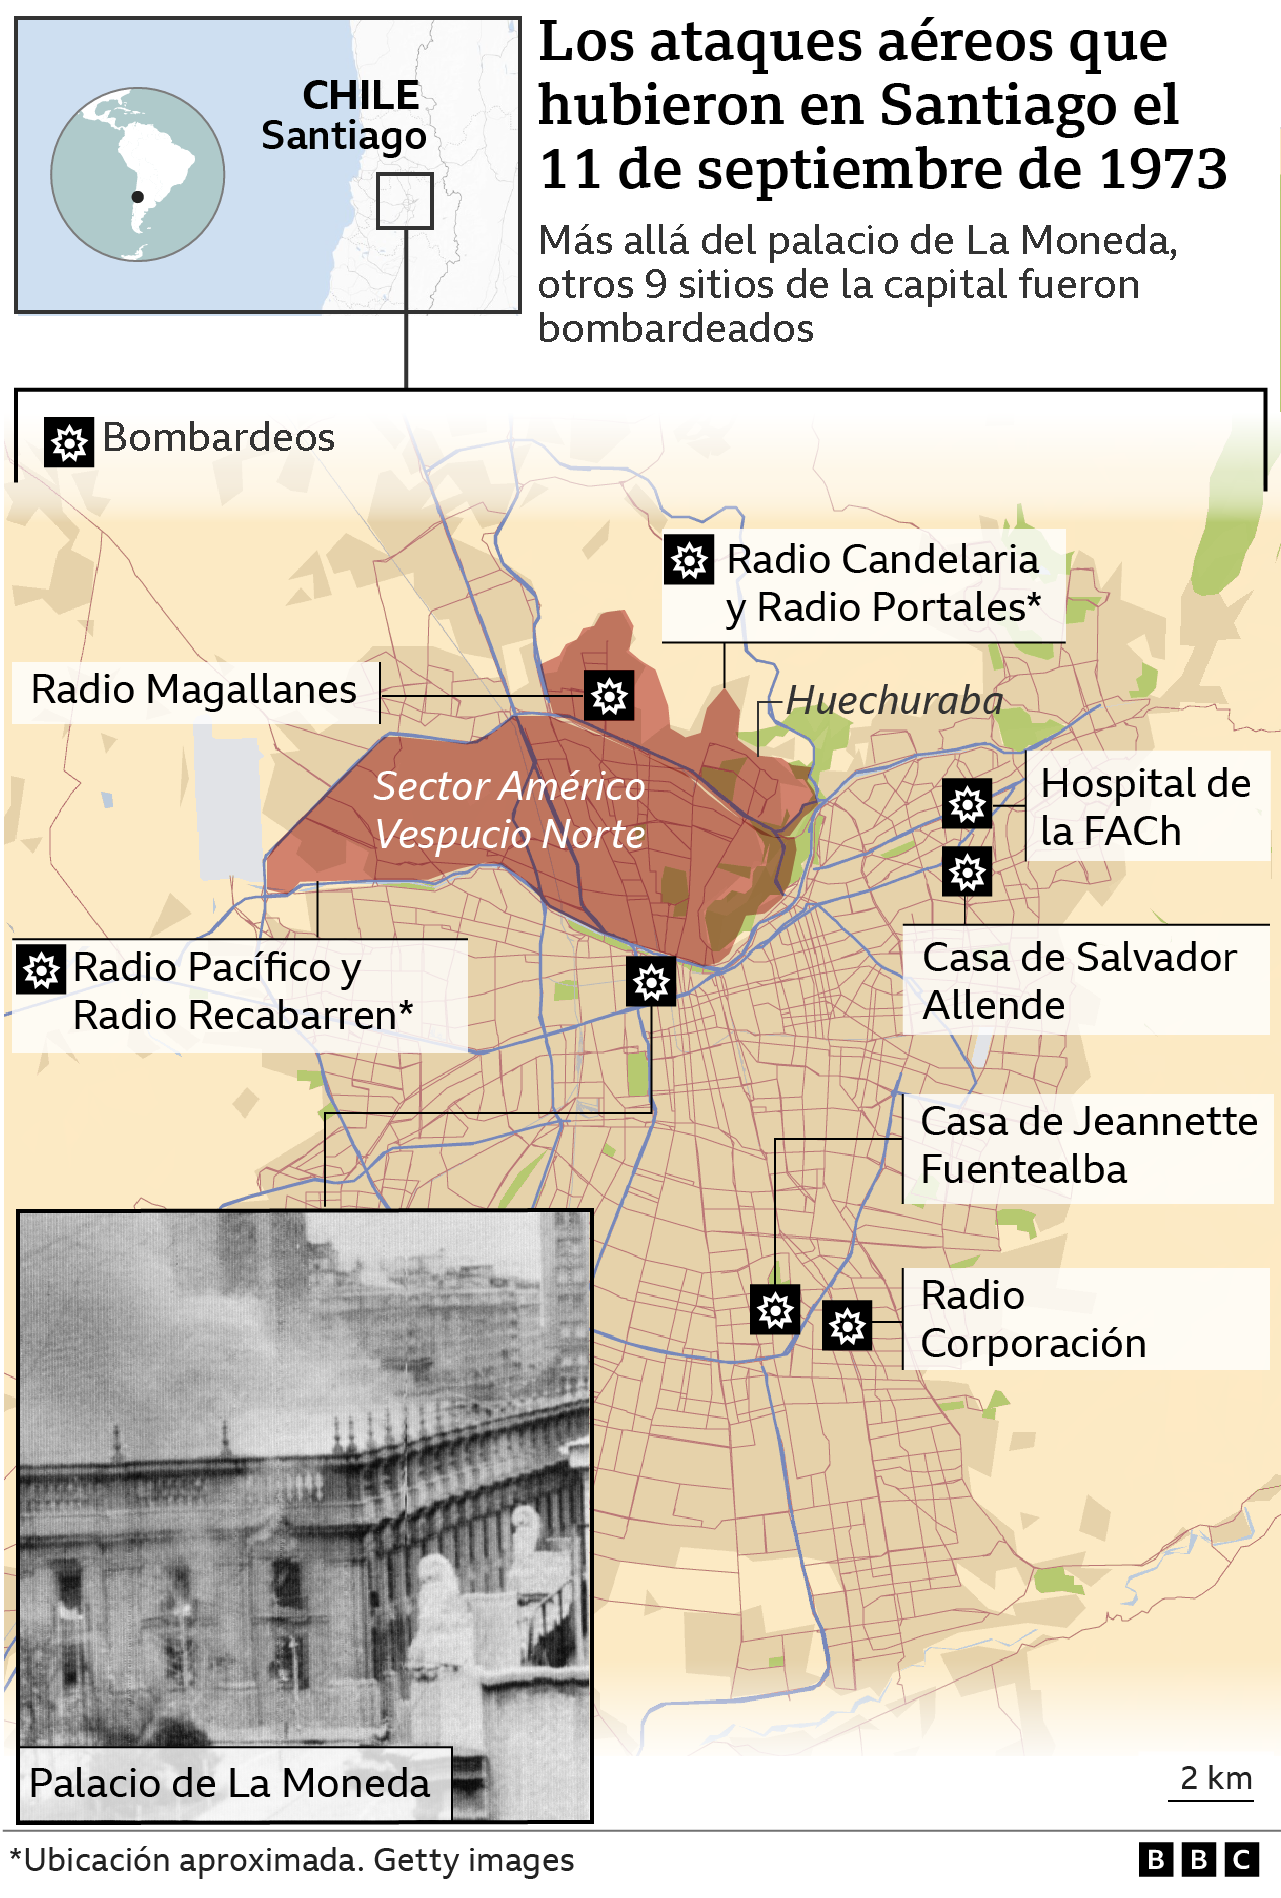 Mapa de los puntos de Santiago que fueron bombardeados el 11 de septiembre de 1973